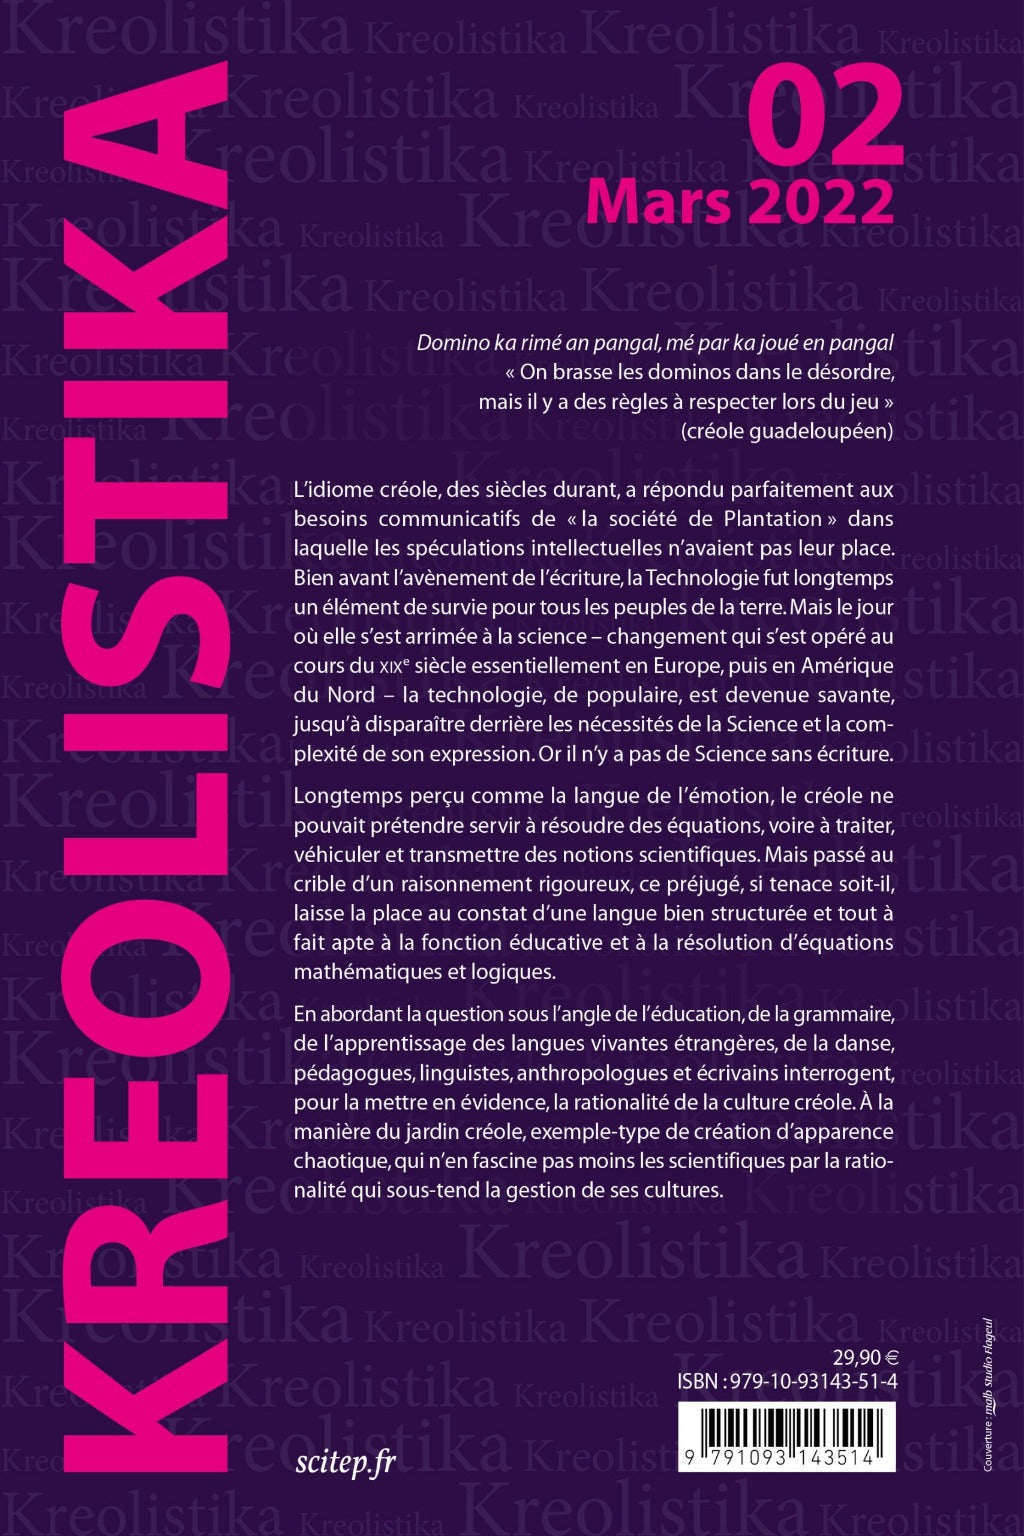 Quatrième de couverture du livre Kreolistika 2 éditeur SCITEP édition auteur Renauld Govain